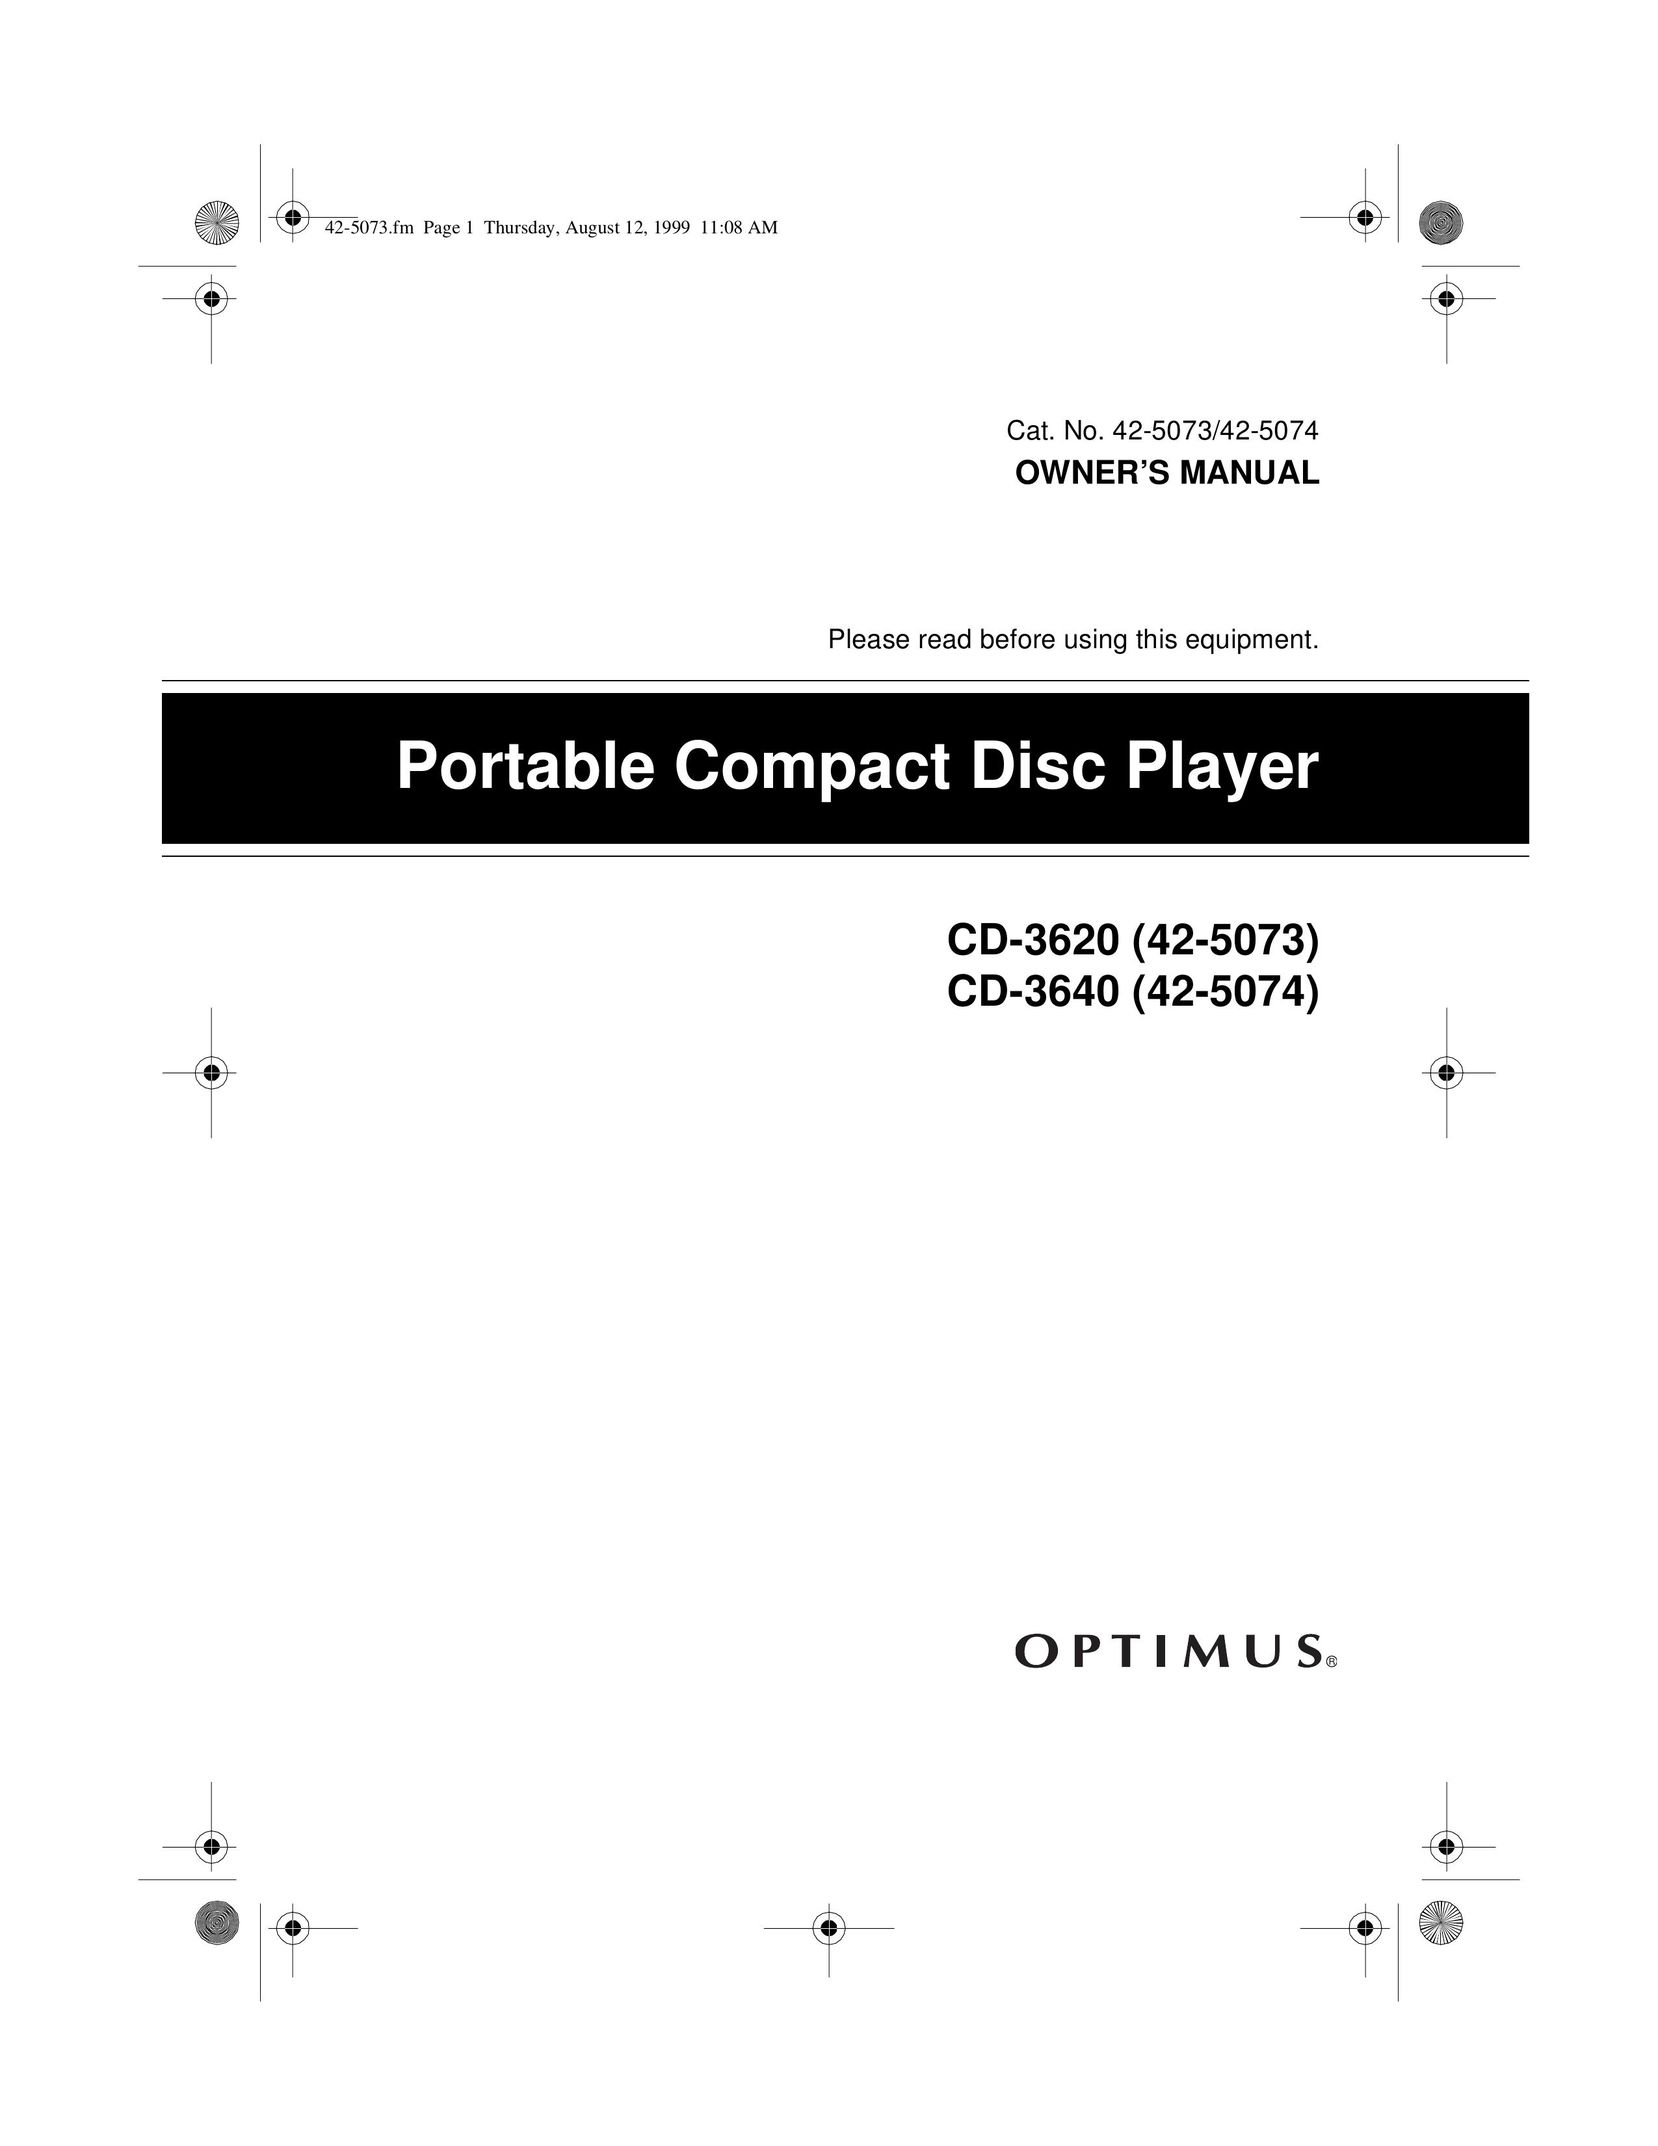 Optimus CD-3640 Portable CD Player User Manual